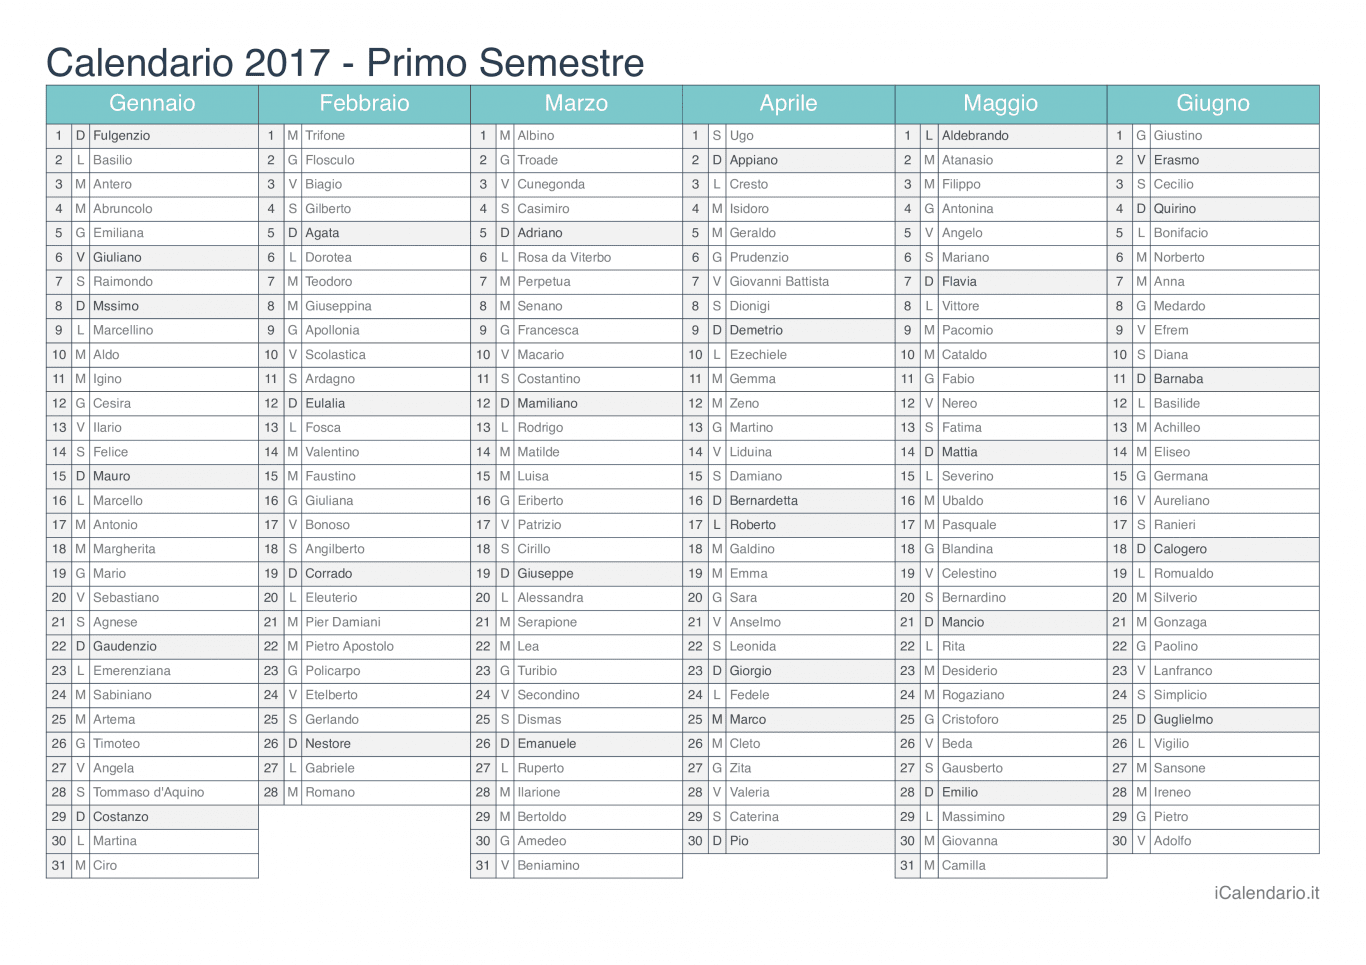 Calendario semestrale 2017 con santi e festivi - Turchese